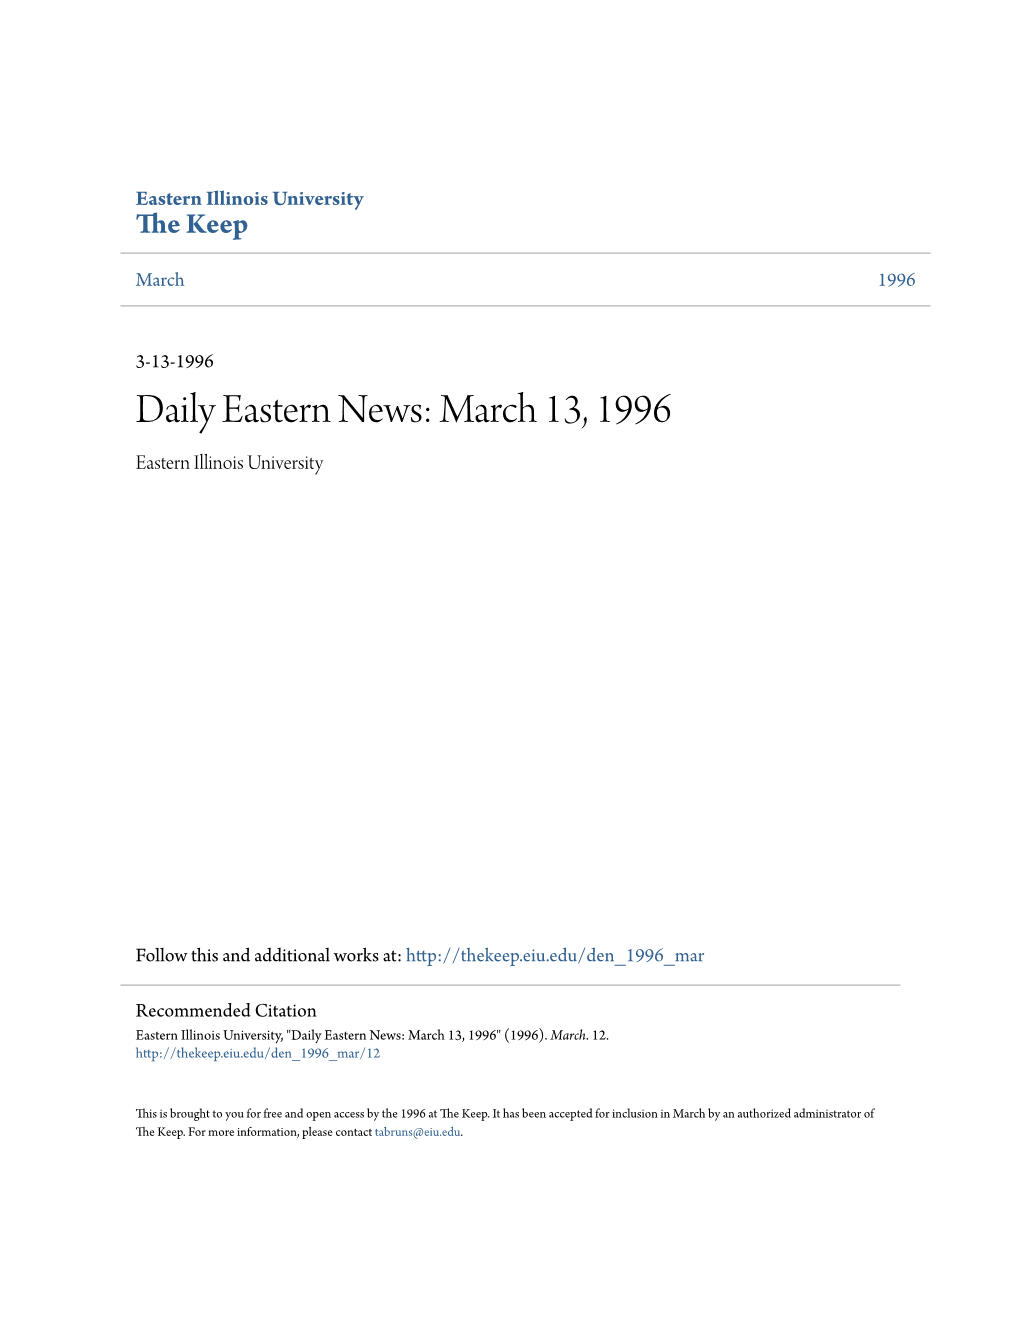 March 13, 1996 Eastern Illinois University